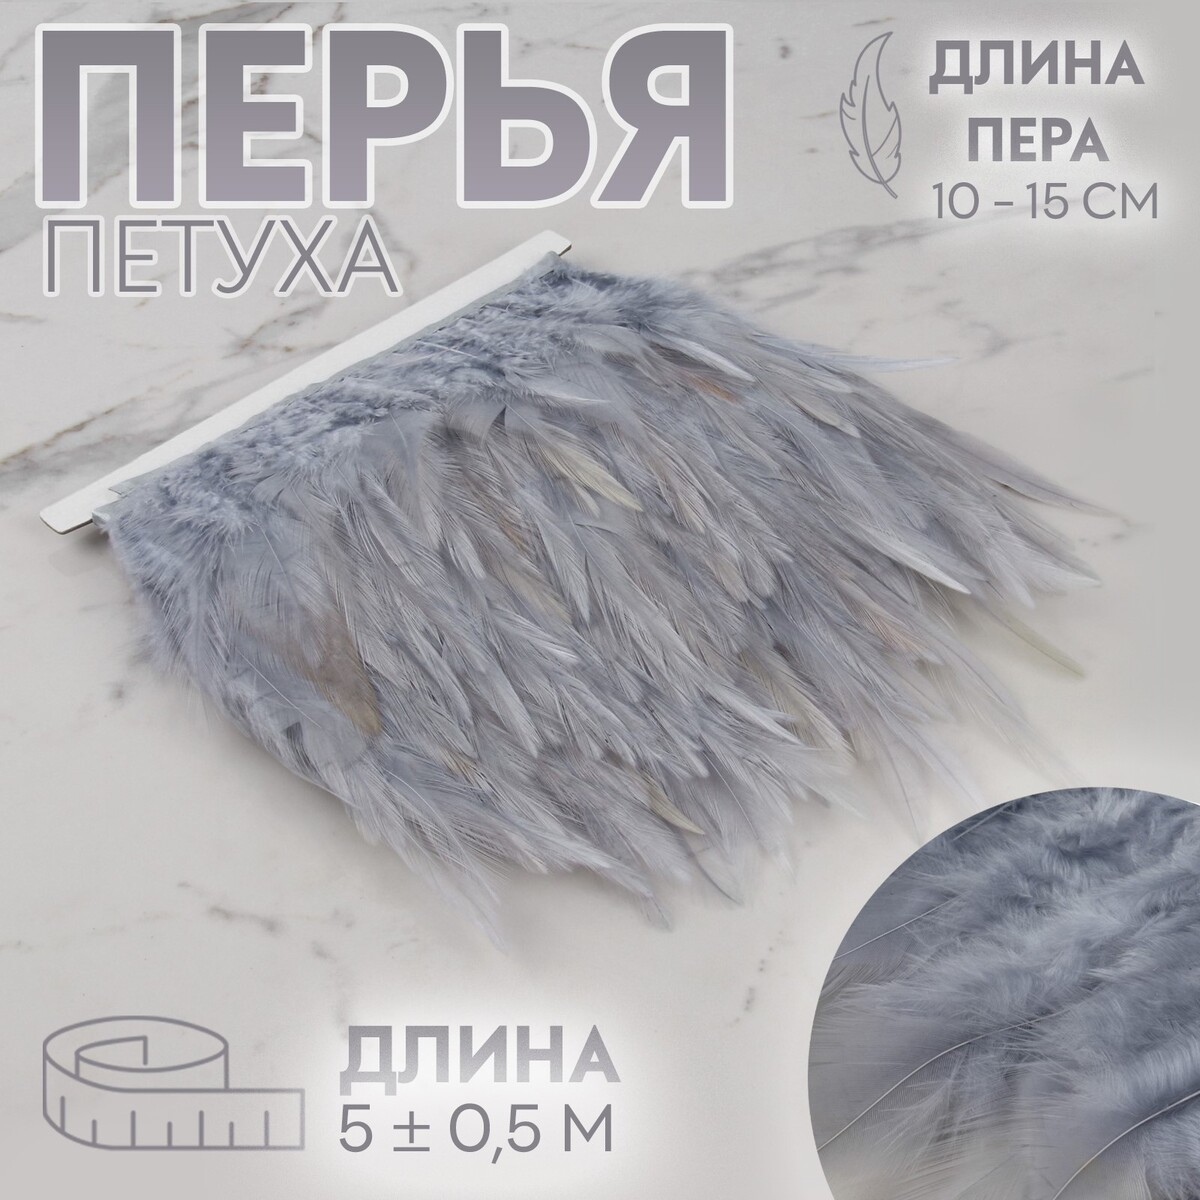 Тесьма с перьями петуха, 10-15 см, 5 ± 0,5 м, цвет серый тесьма с перьями петуха 10 15 см 5 ± 0 5 м серый